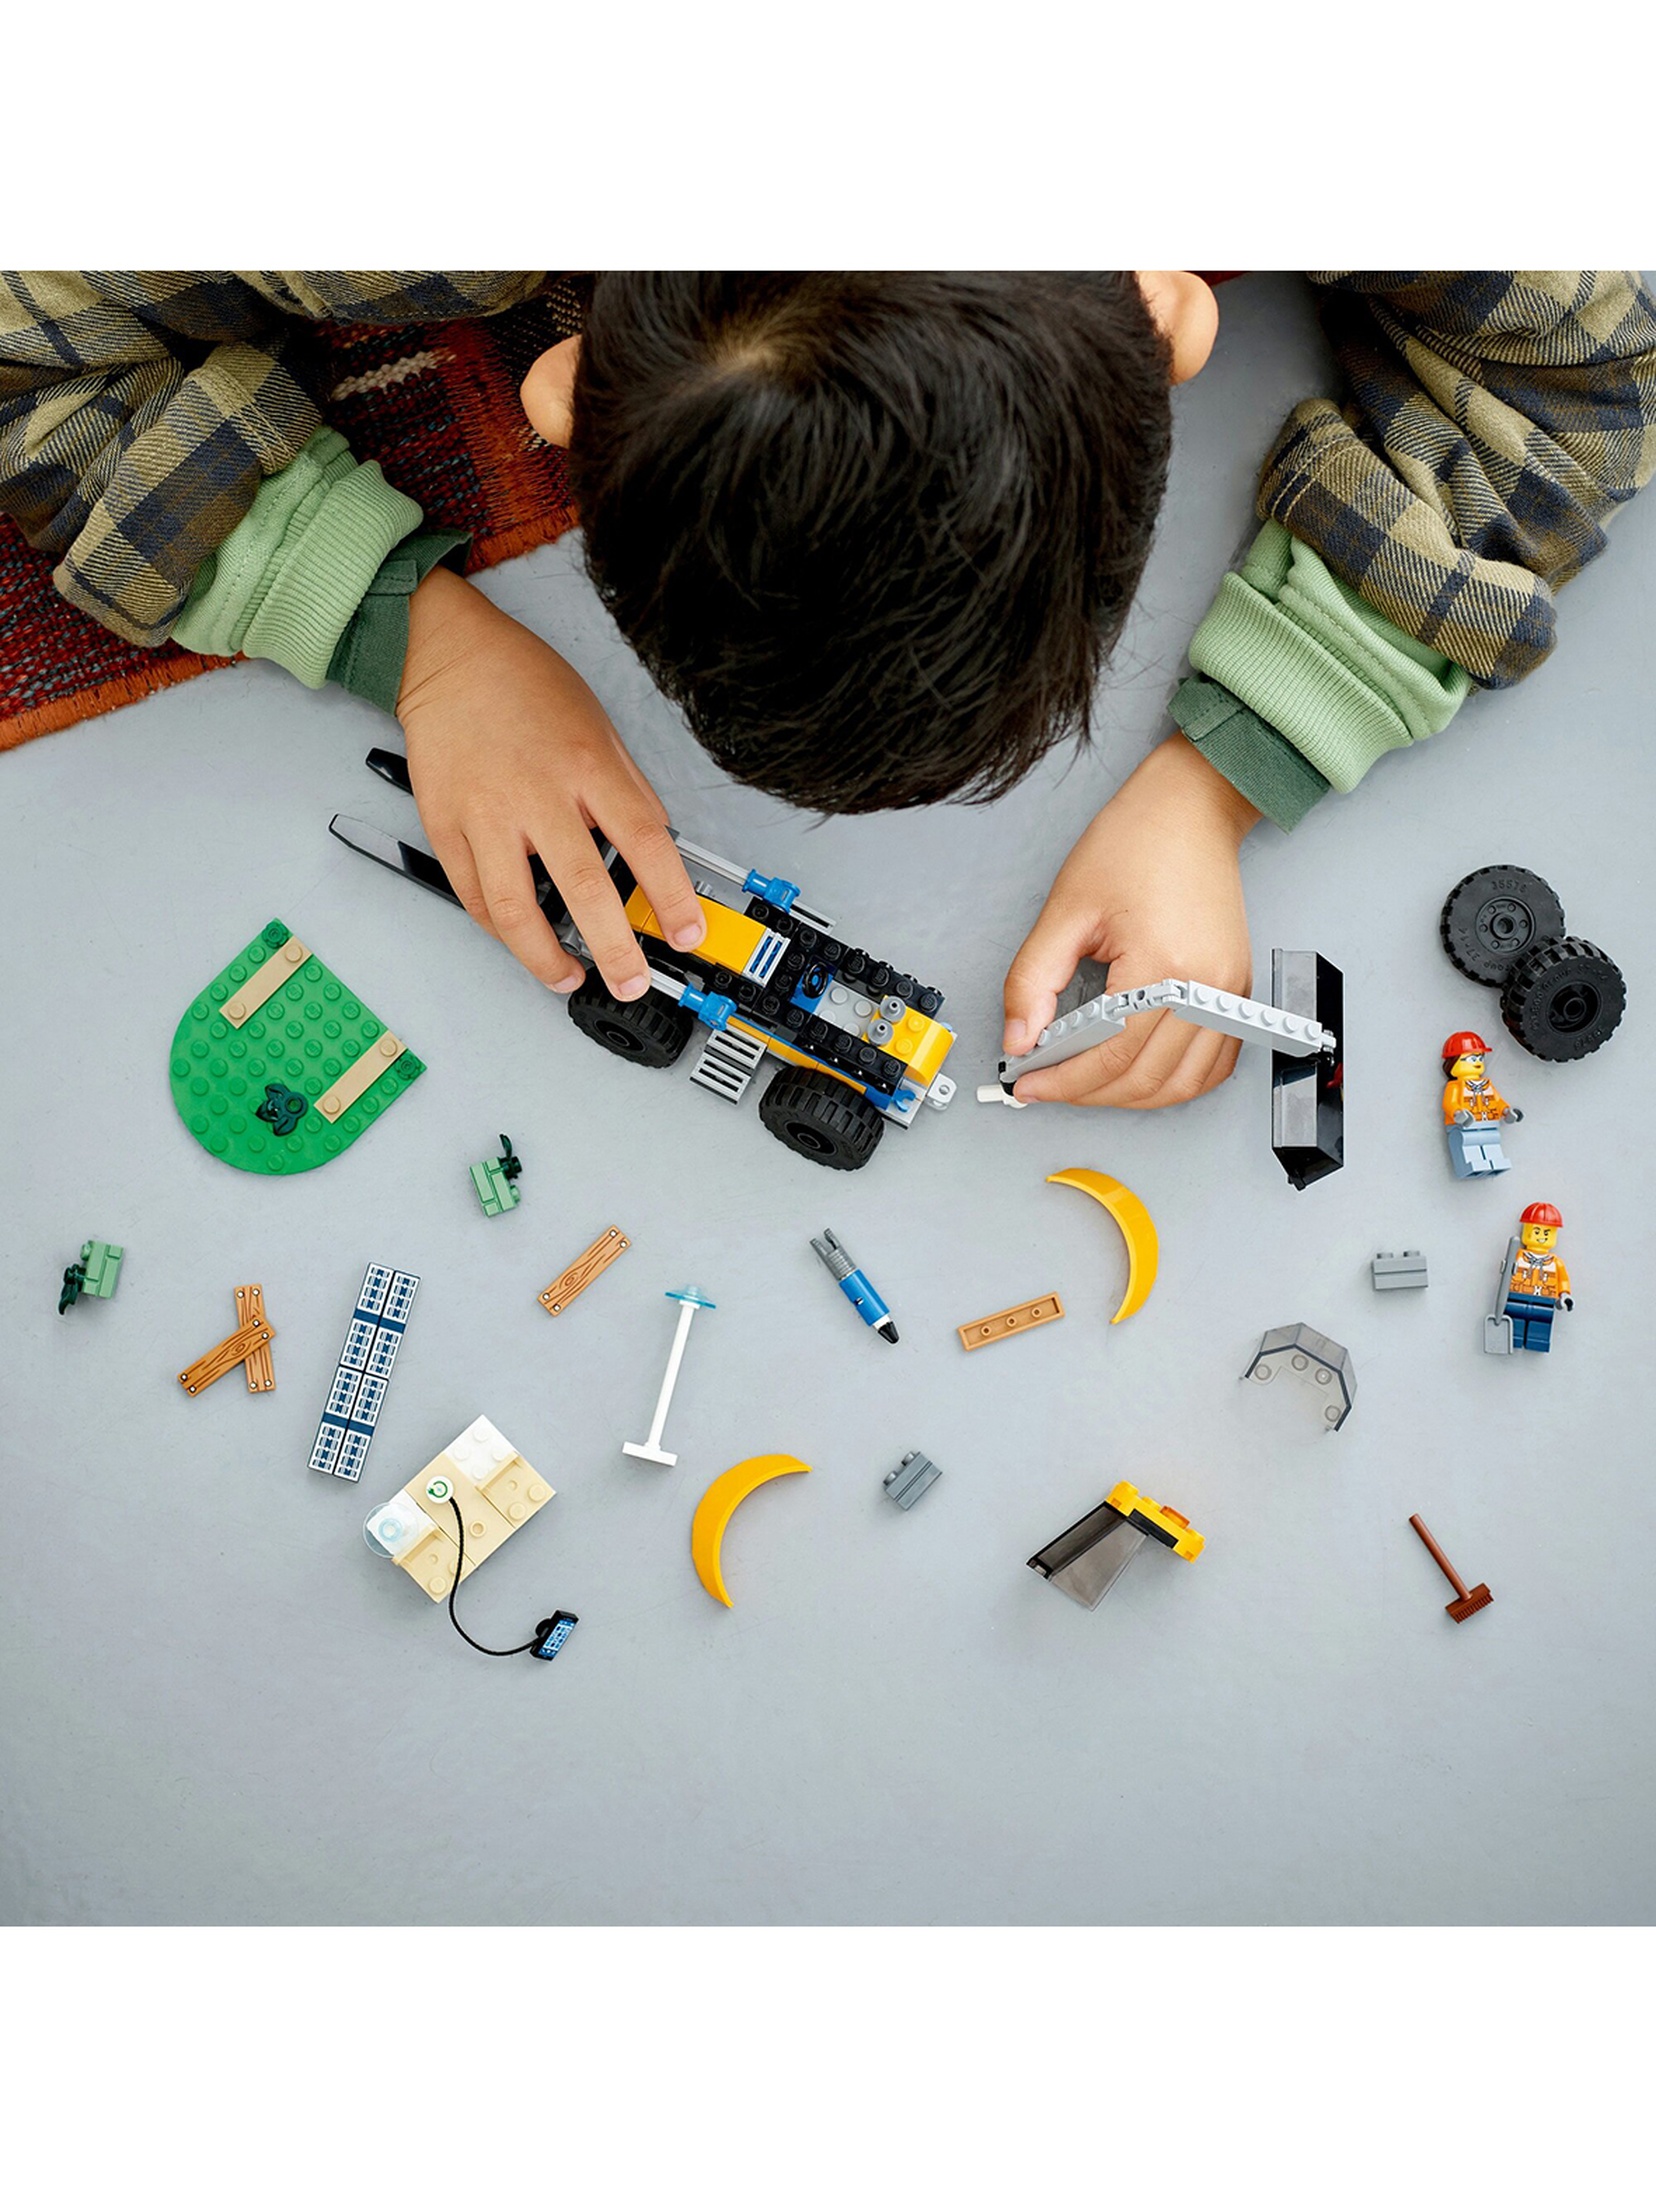 Klocki LEGO City 60385 Koparka - 148 elementów, wiek 5 +